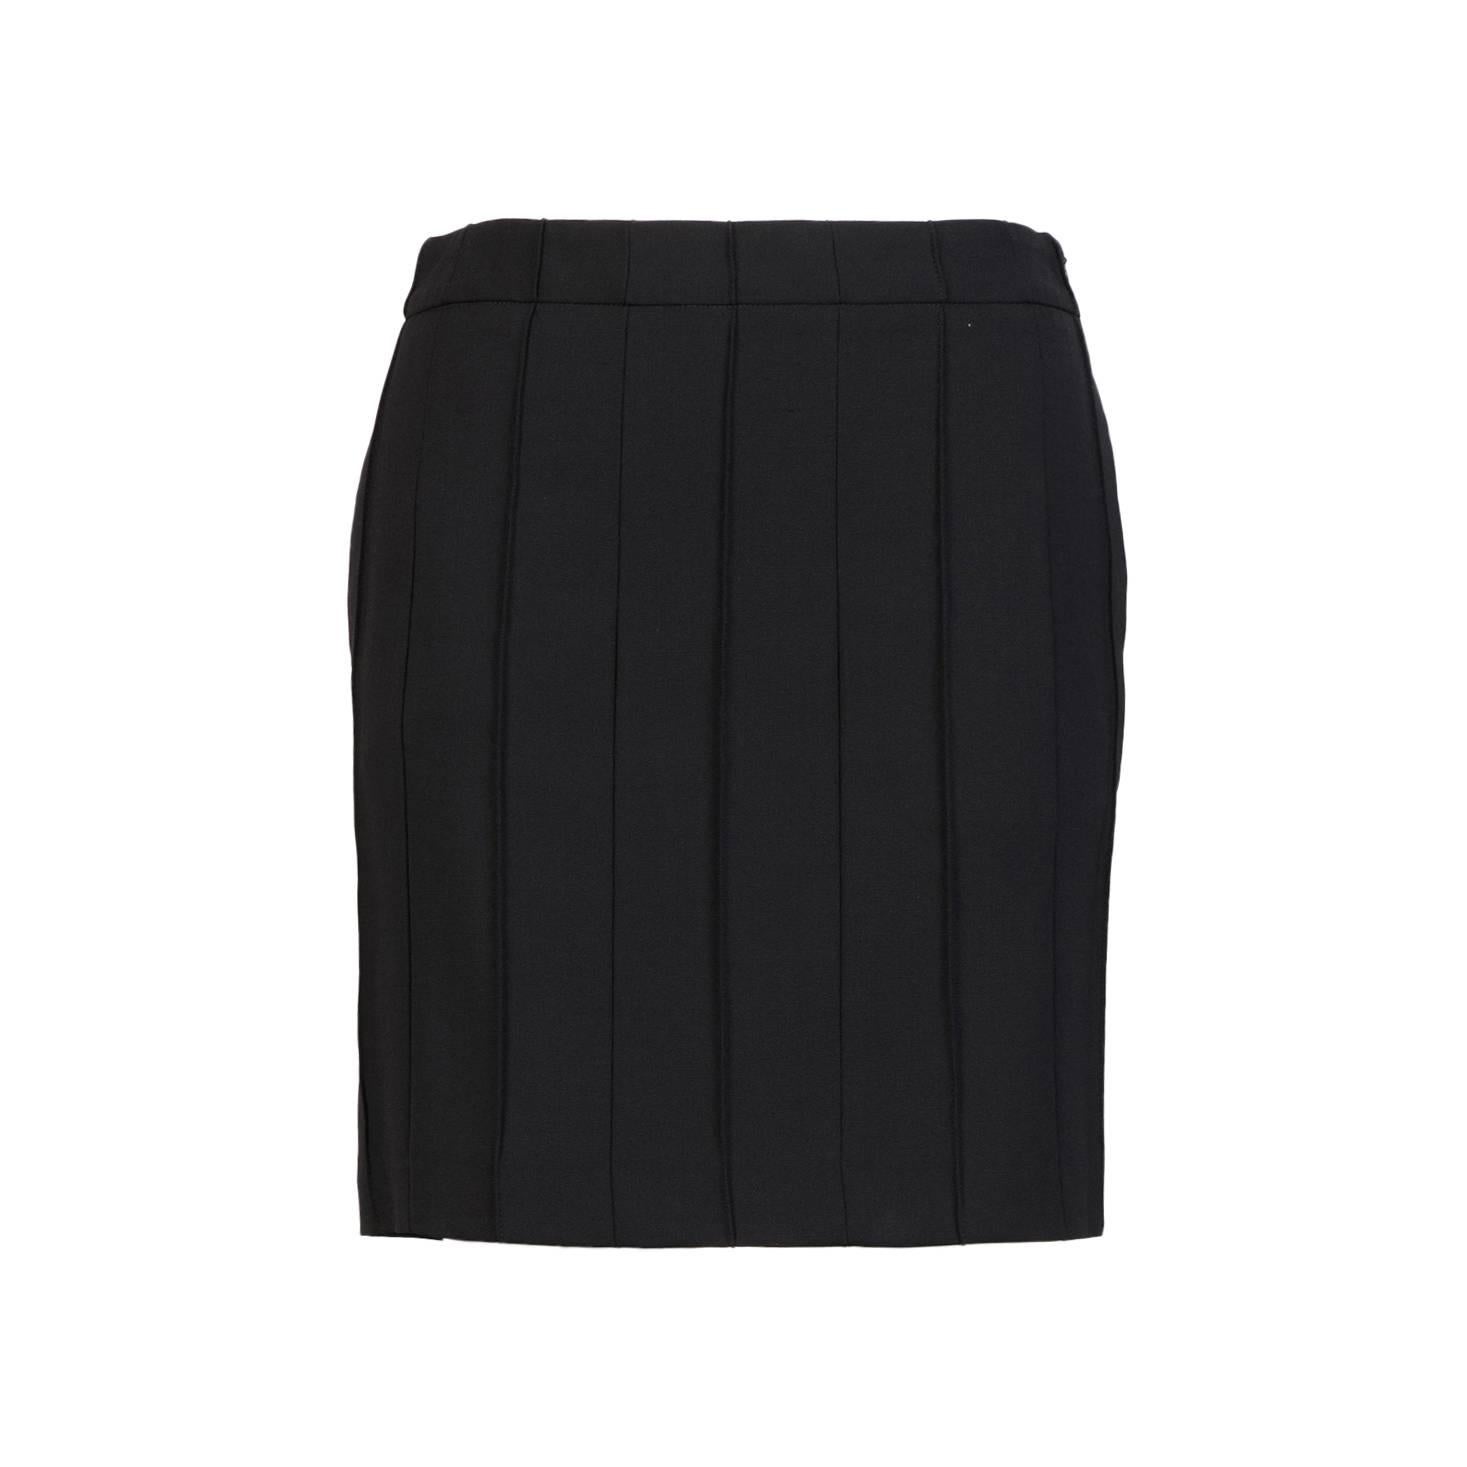 Martin Margiela Short Skirt For Sale